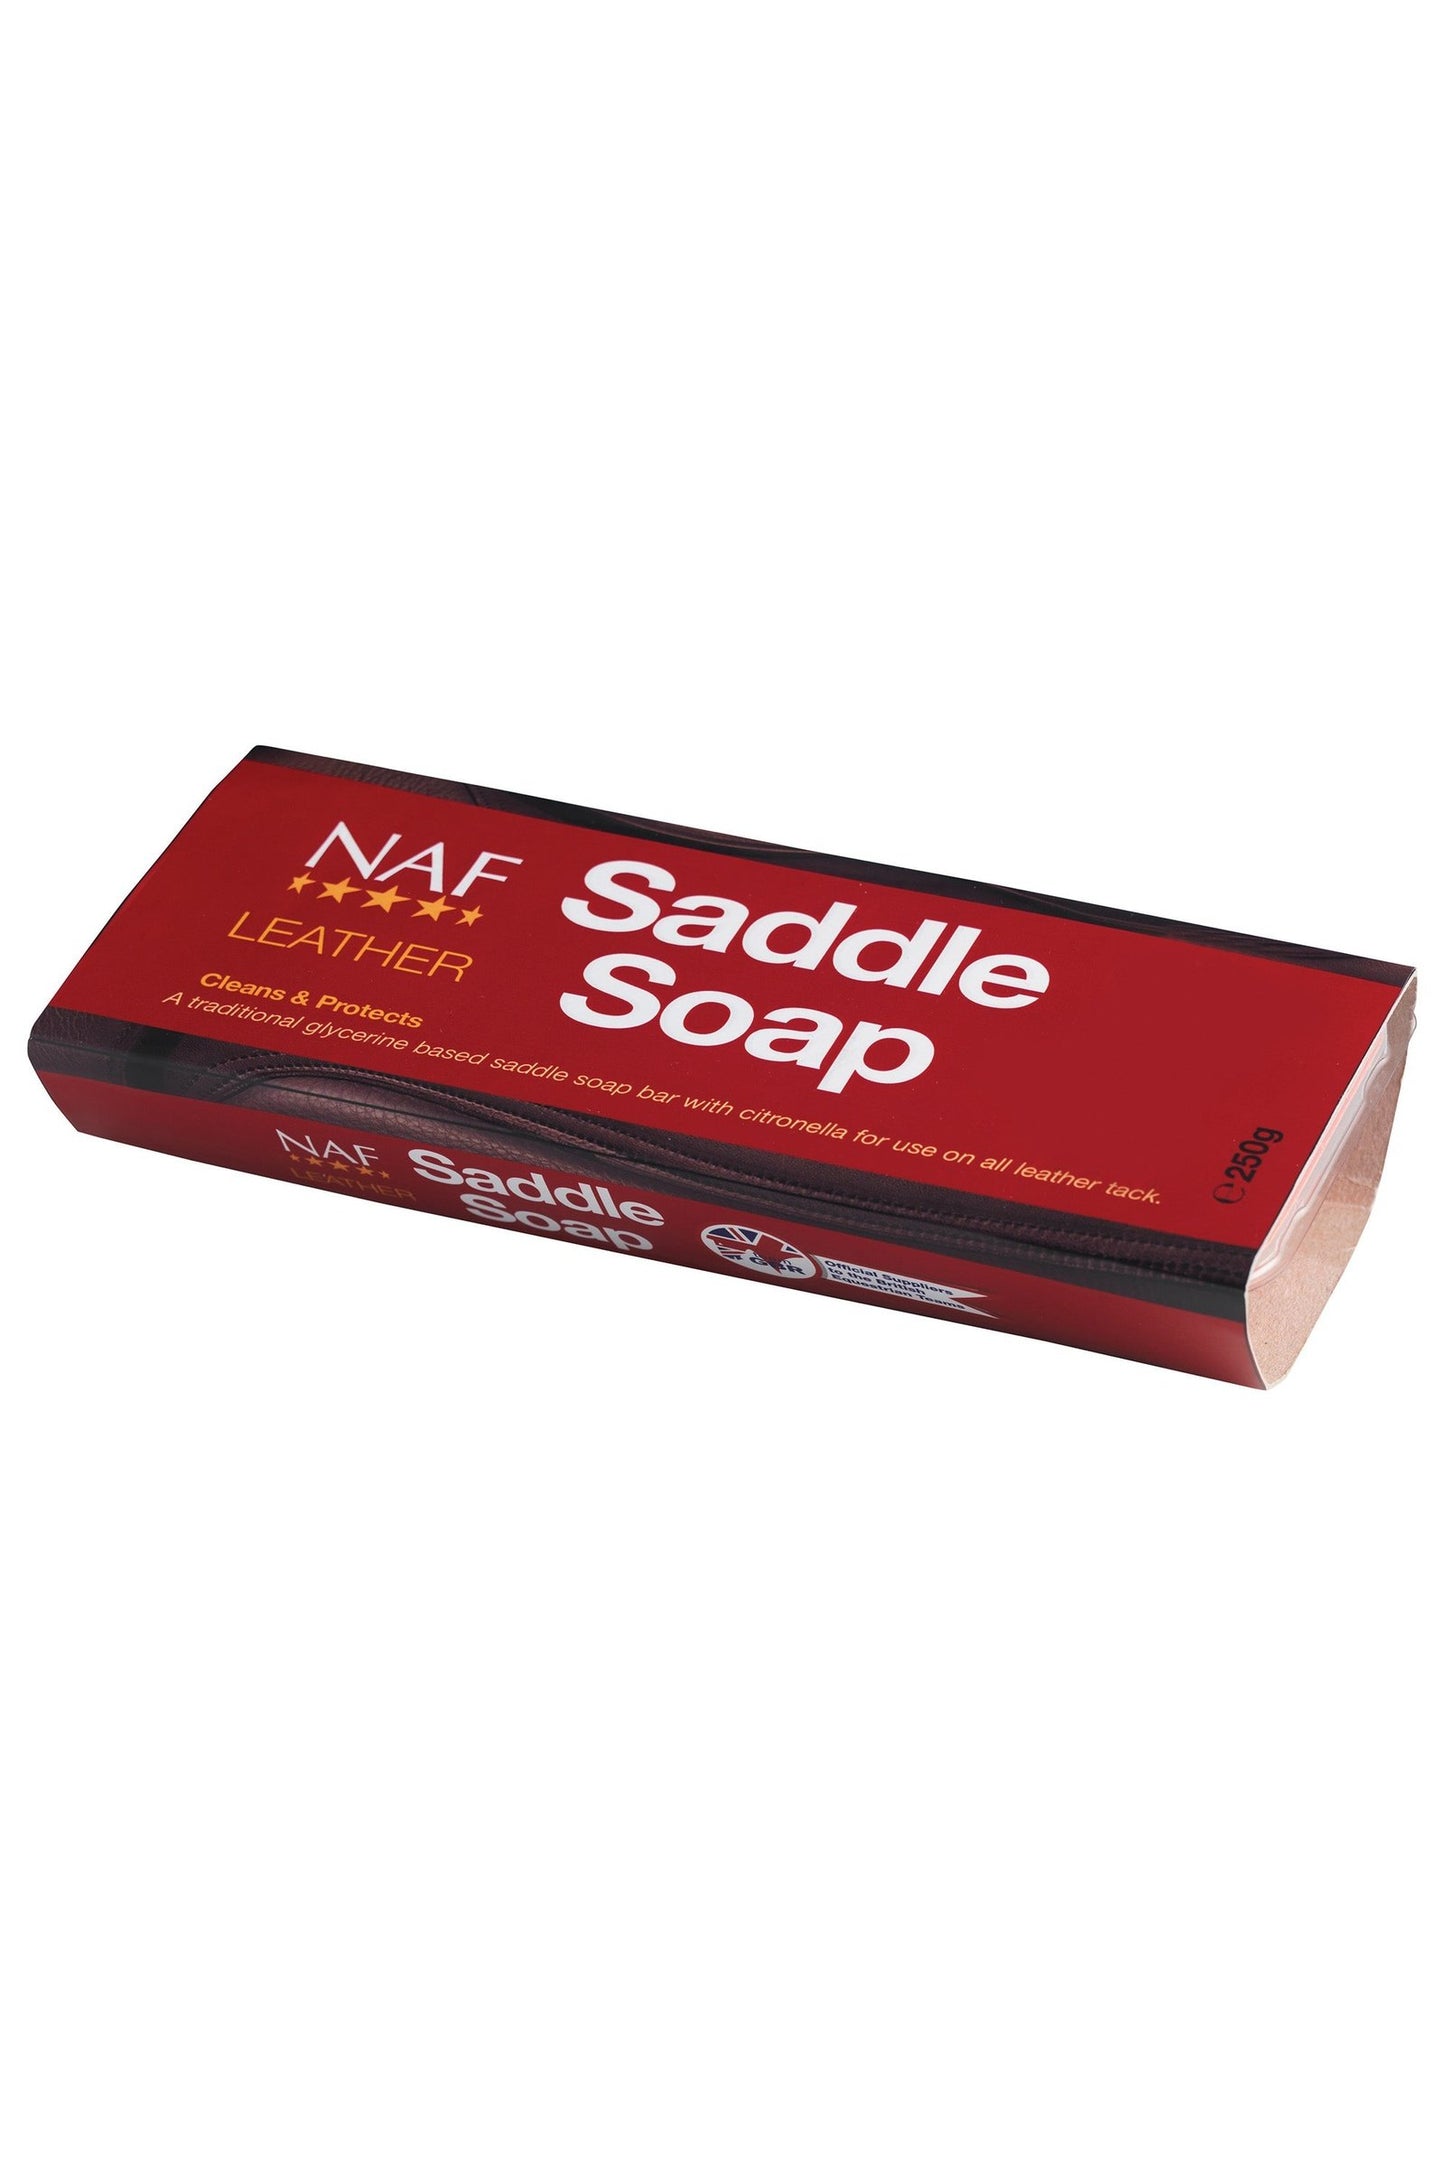 Leather Saddle Soap Bar 250g